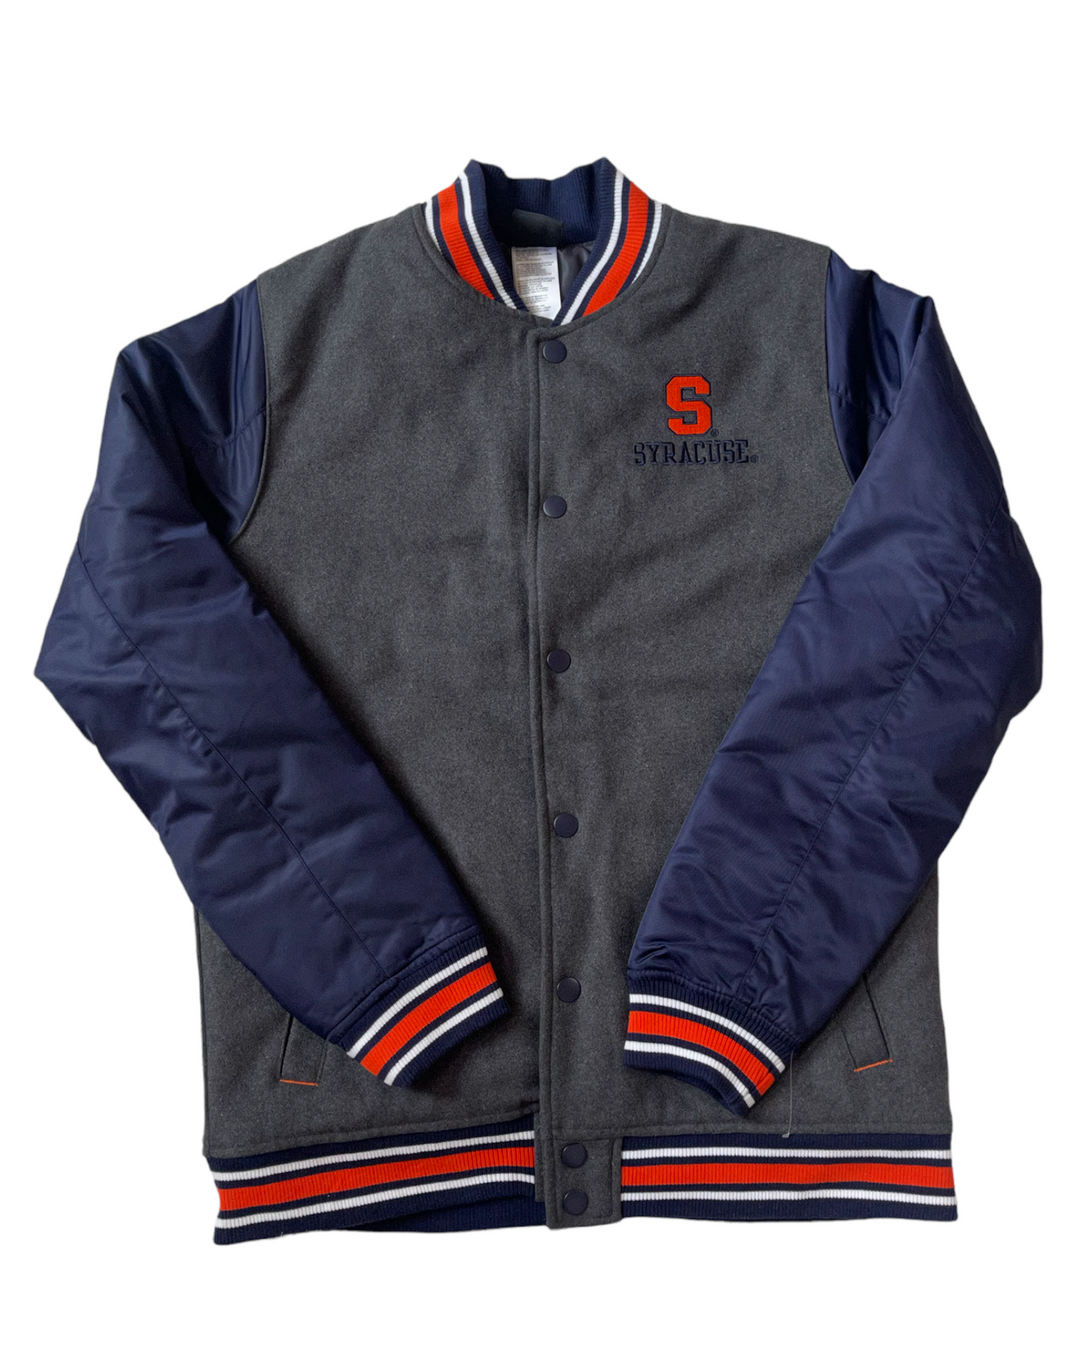 Syracuse Vintage Bomber Jacket